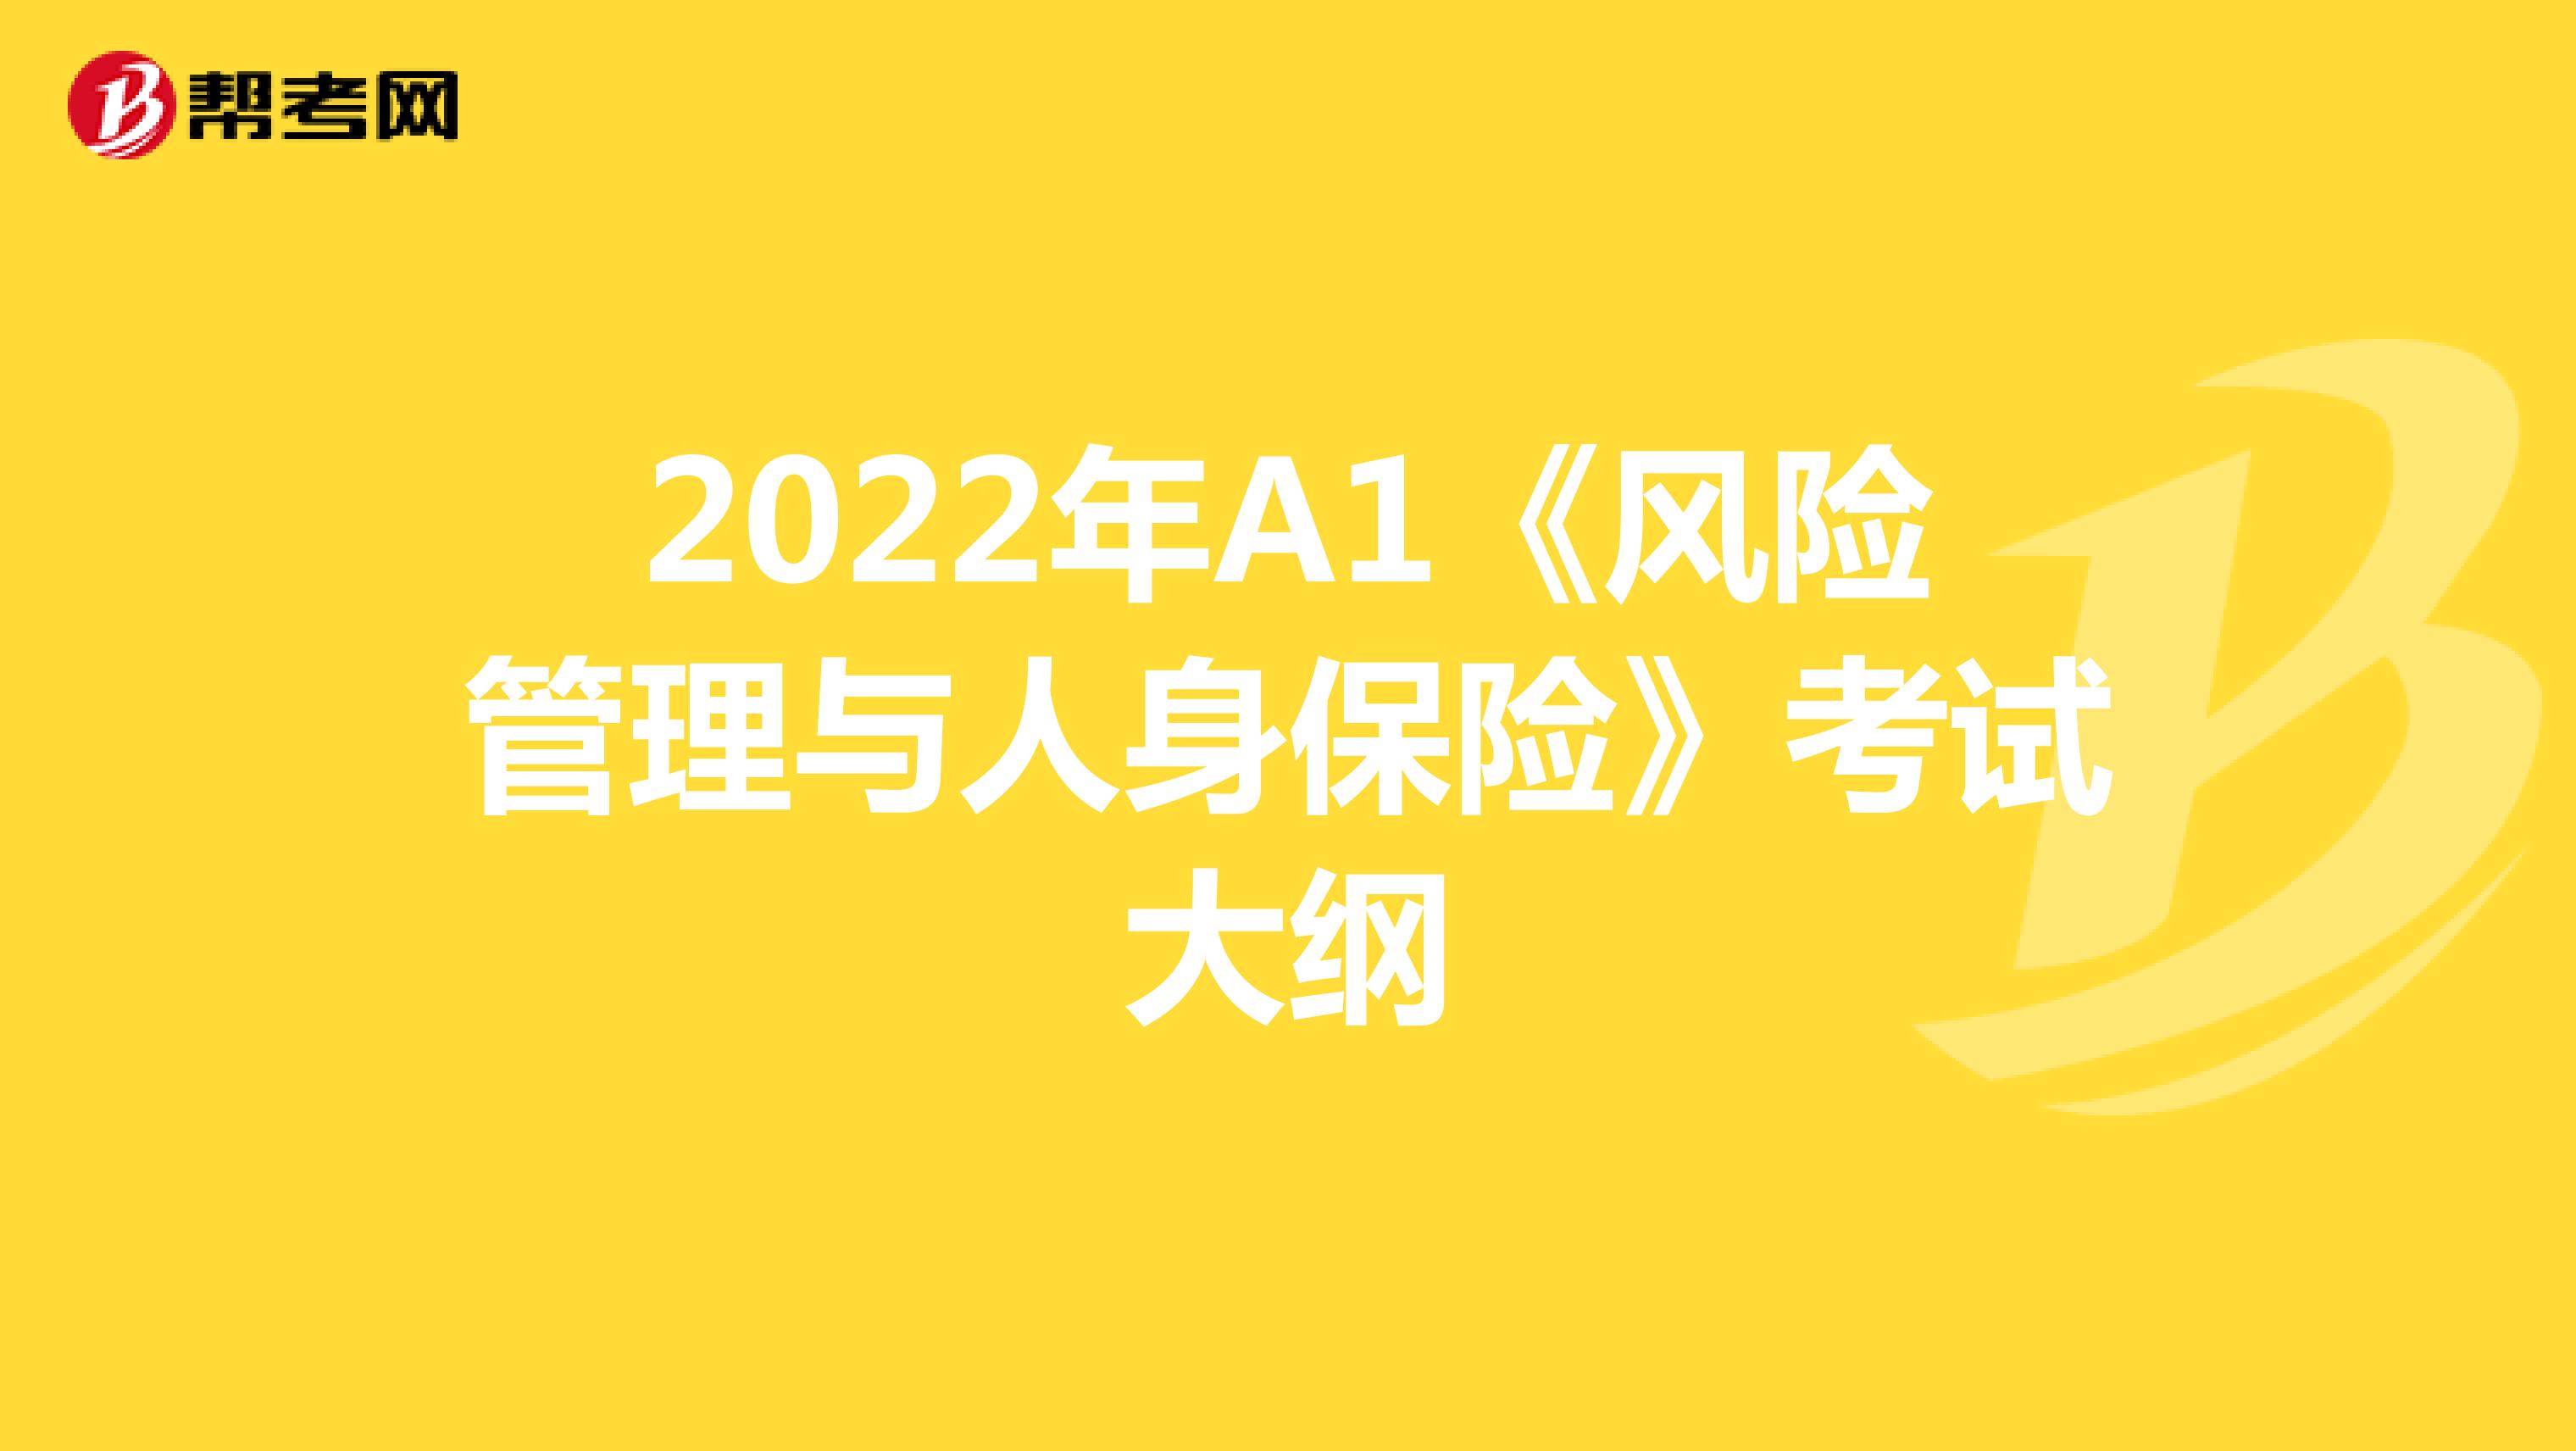 2022年A1《风险管理与人身保险》考试大纲